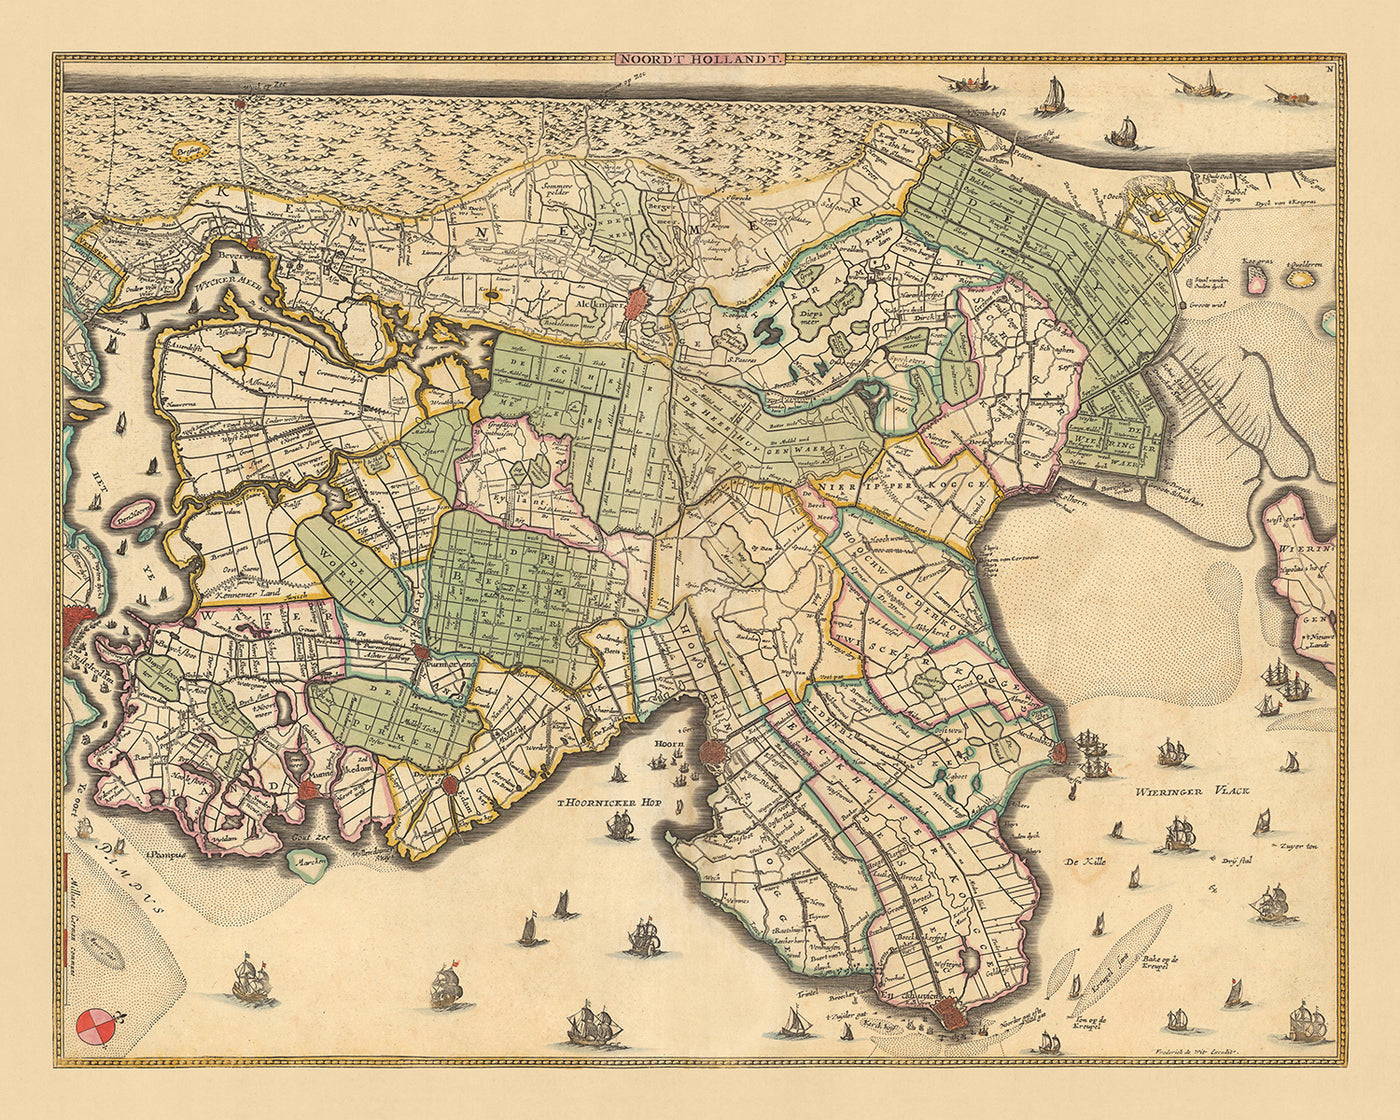 Old Map of North Holland by Visscher, 1690: Amsterdam, Alkmaar, Hoorn, Beverwijk, Purmerend